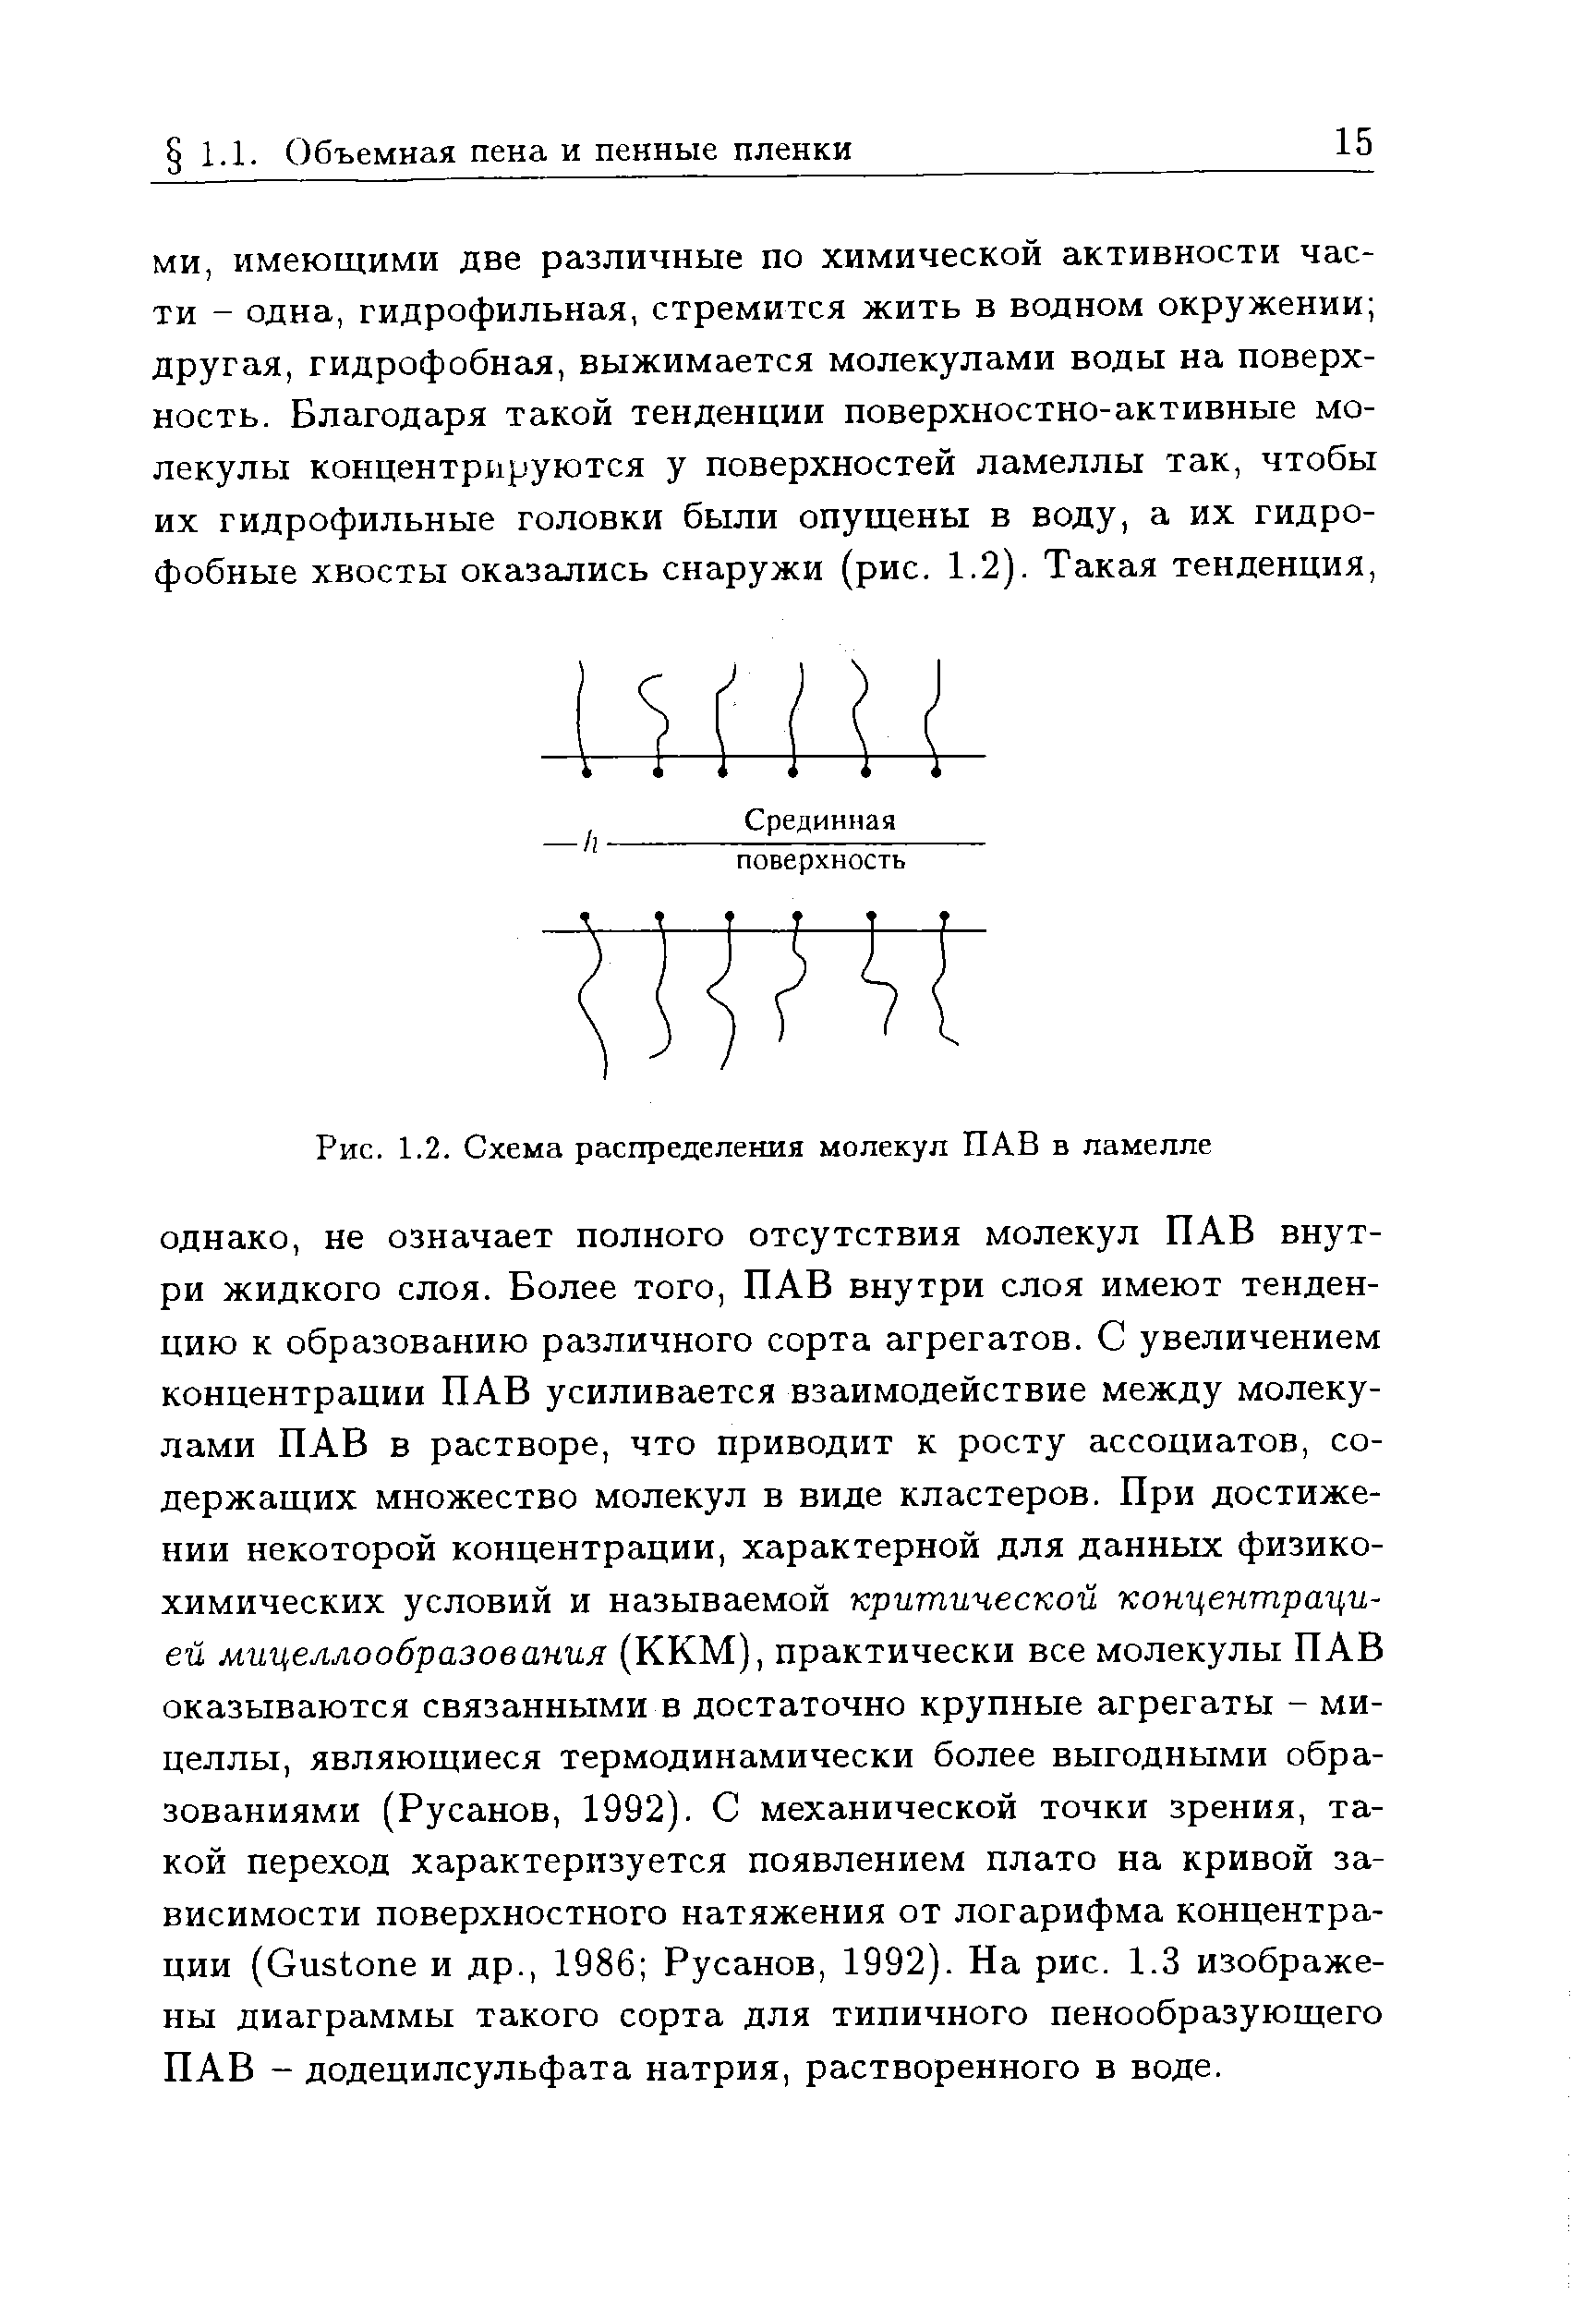 Рис. 1.2. Схема распределения молекул ПАВ в ламелле
